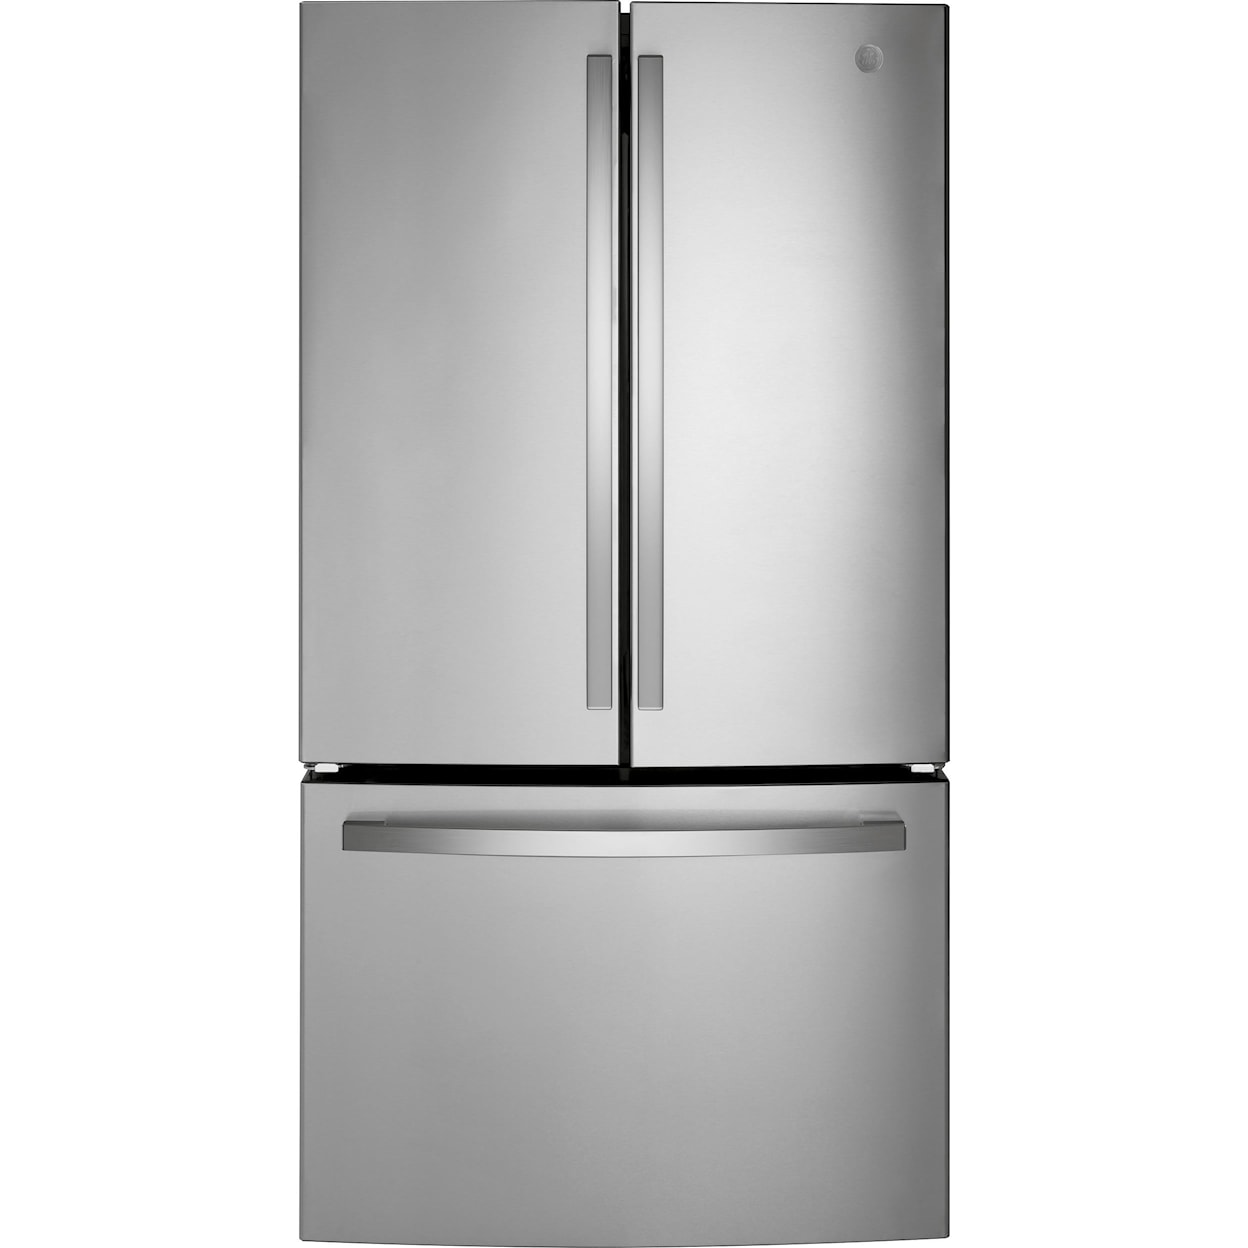 GE Appliances Refrigerators French Door Built In Refrigerator